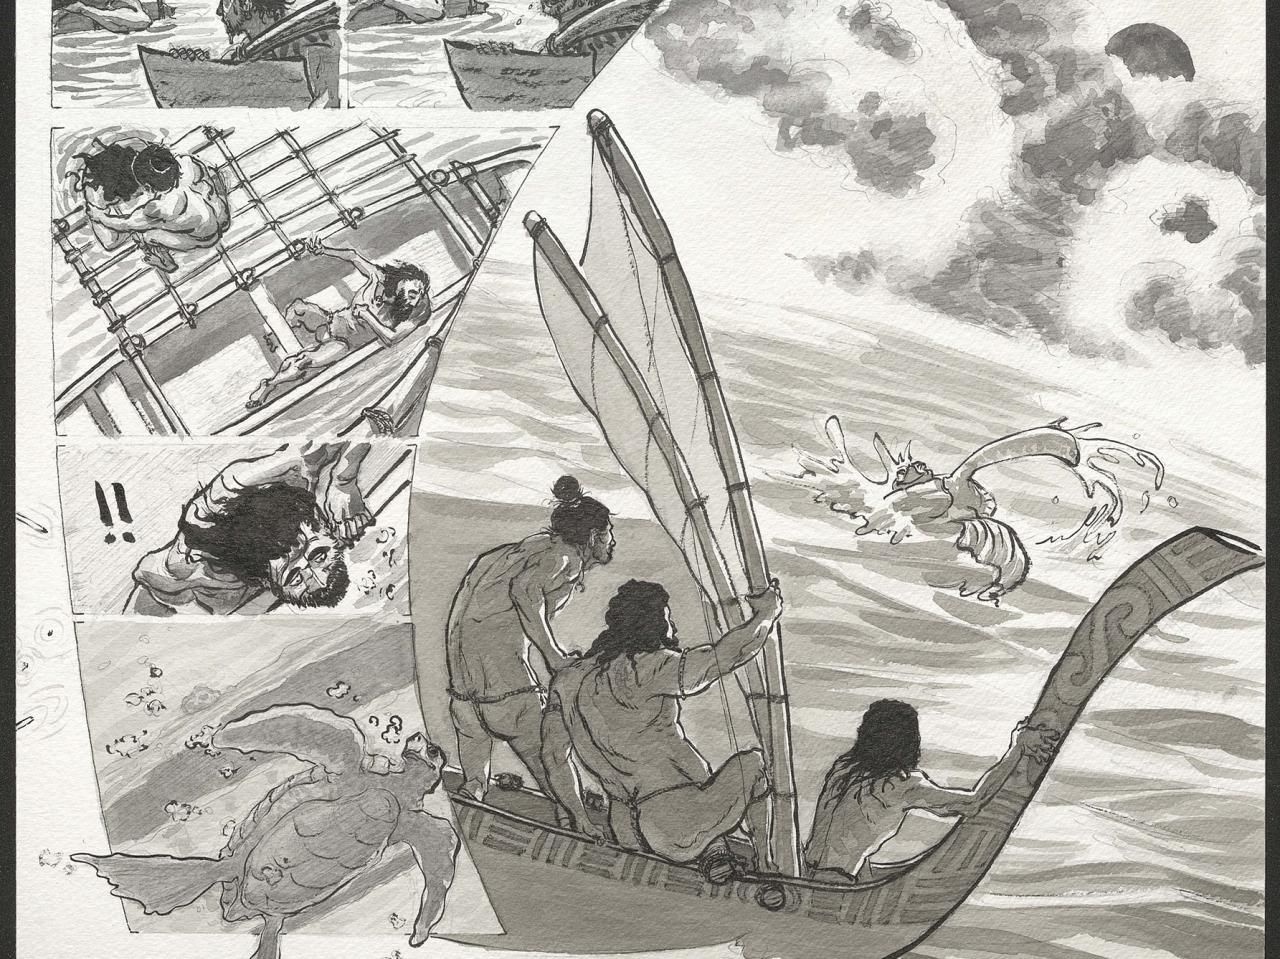 Tres exploradores se encuentran con Honu, el espíritu que los guiará a la isla